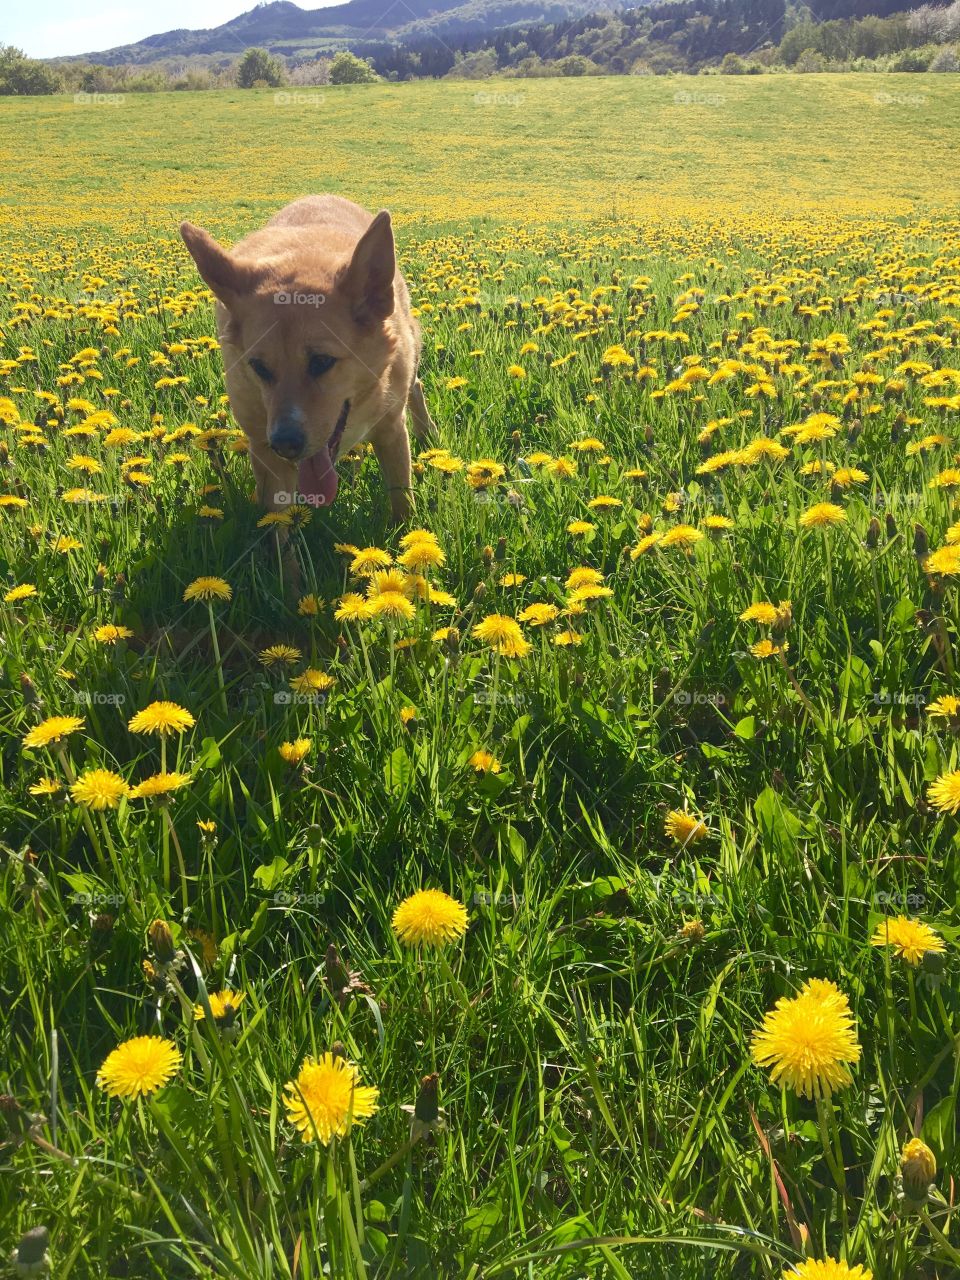 Dog in the dandelions field 